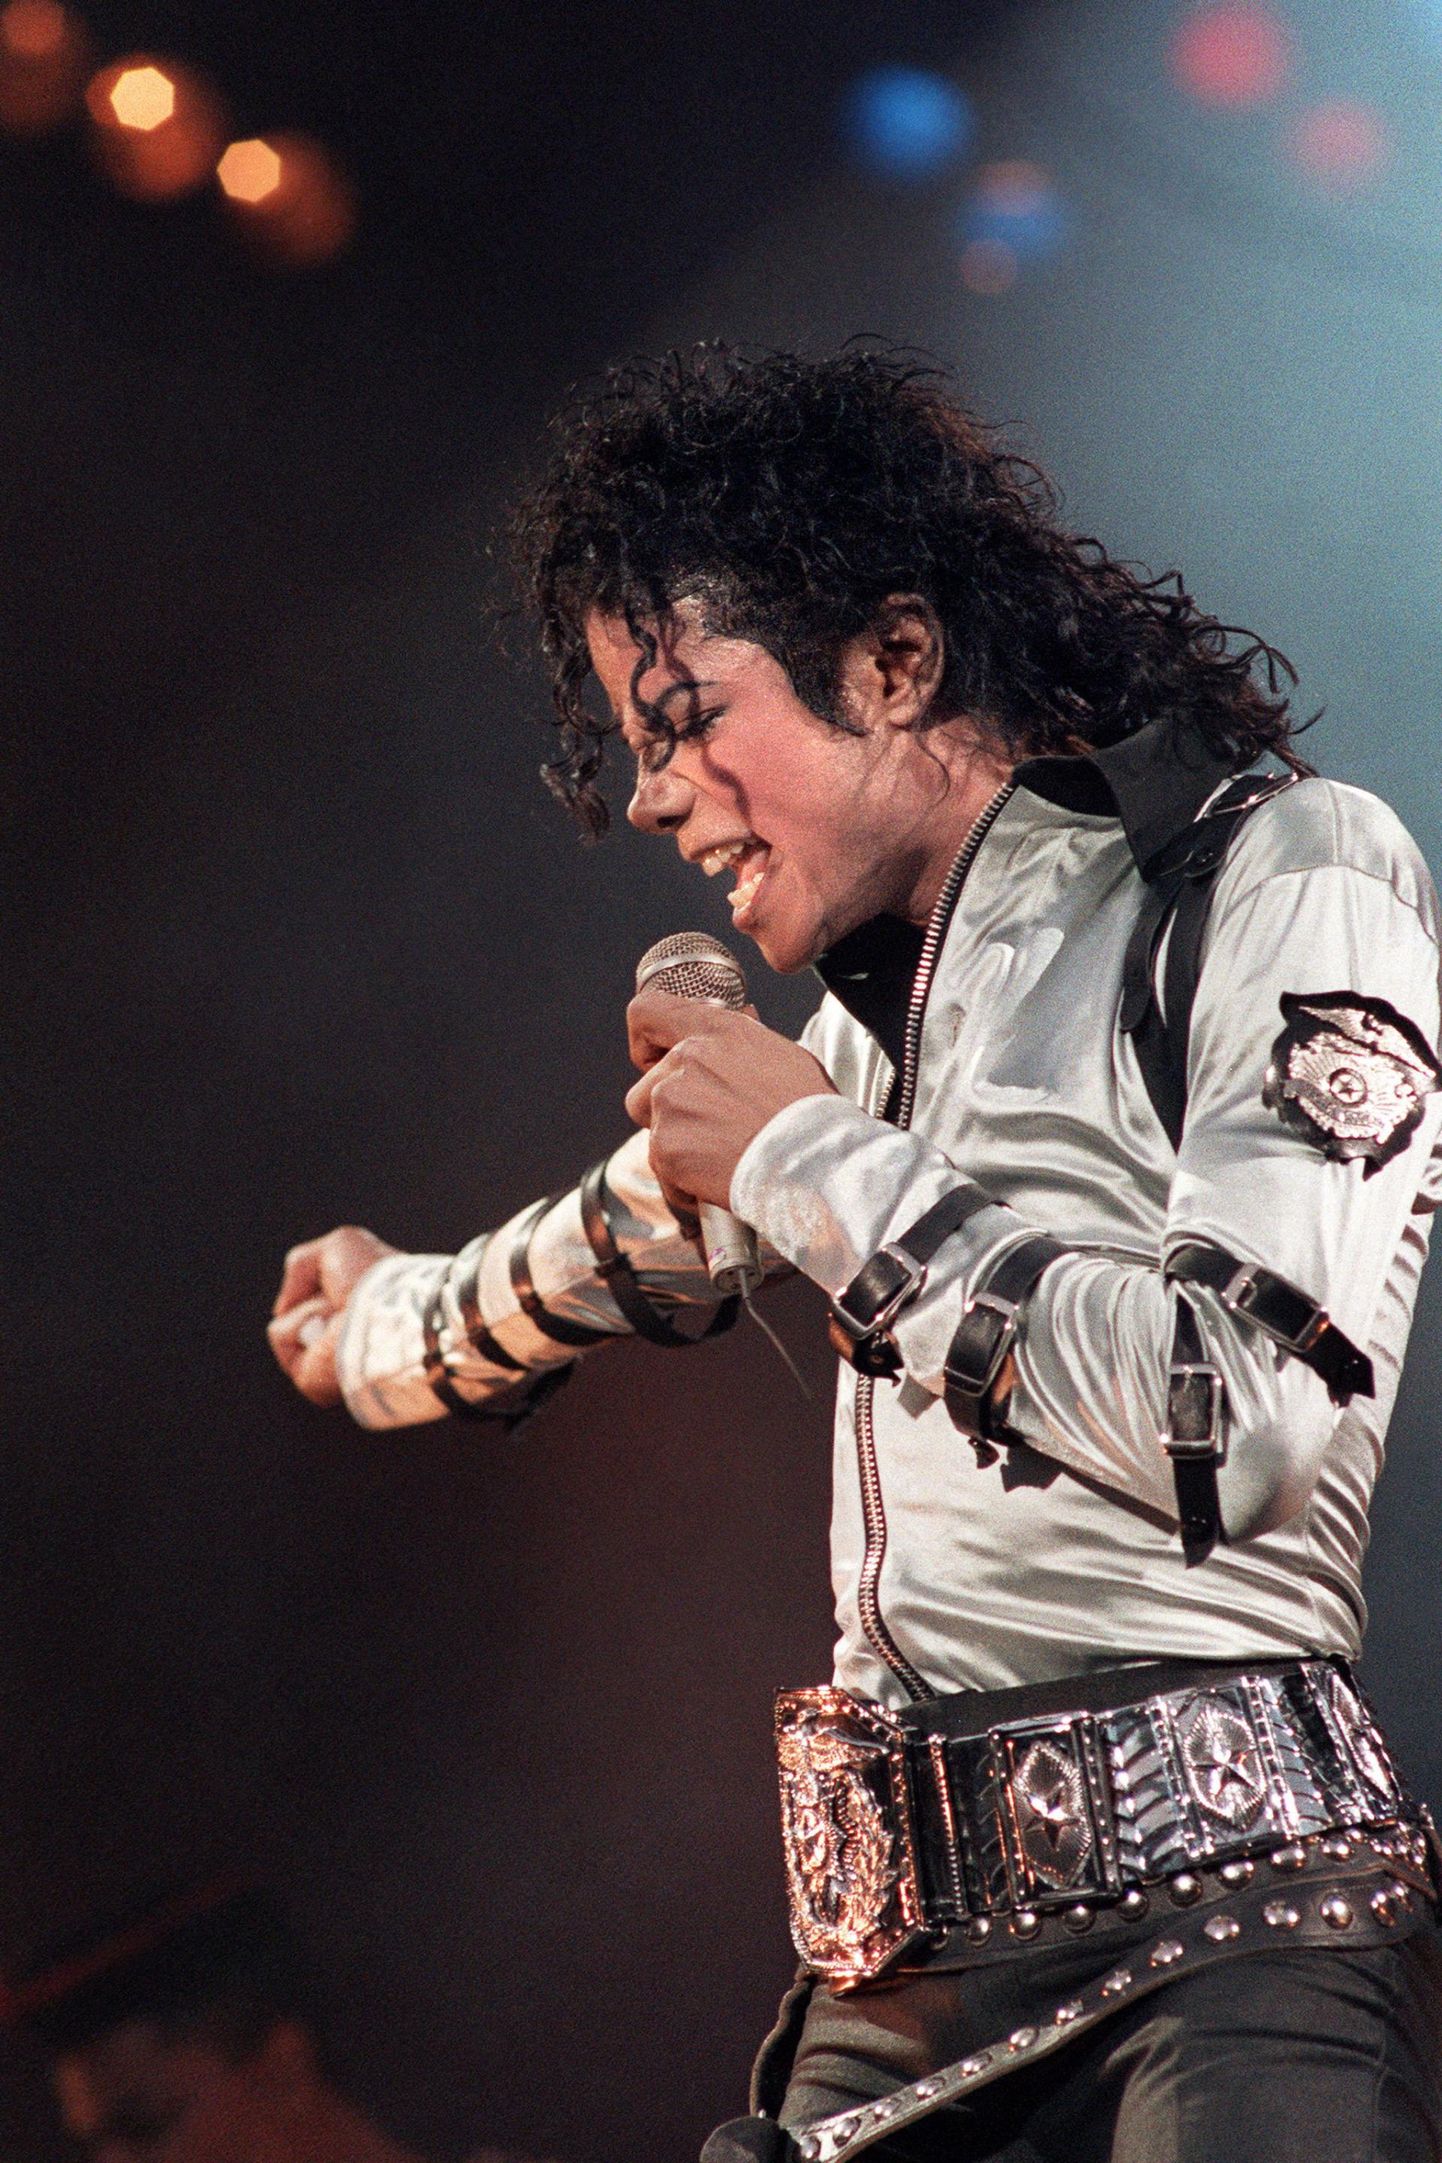 Michael Jacksoni muusikakataloogi väärtuseks hinnatakse 1,2 miljardit dollarit.